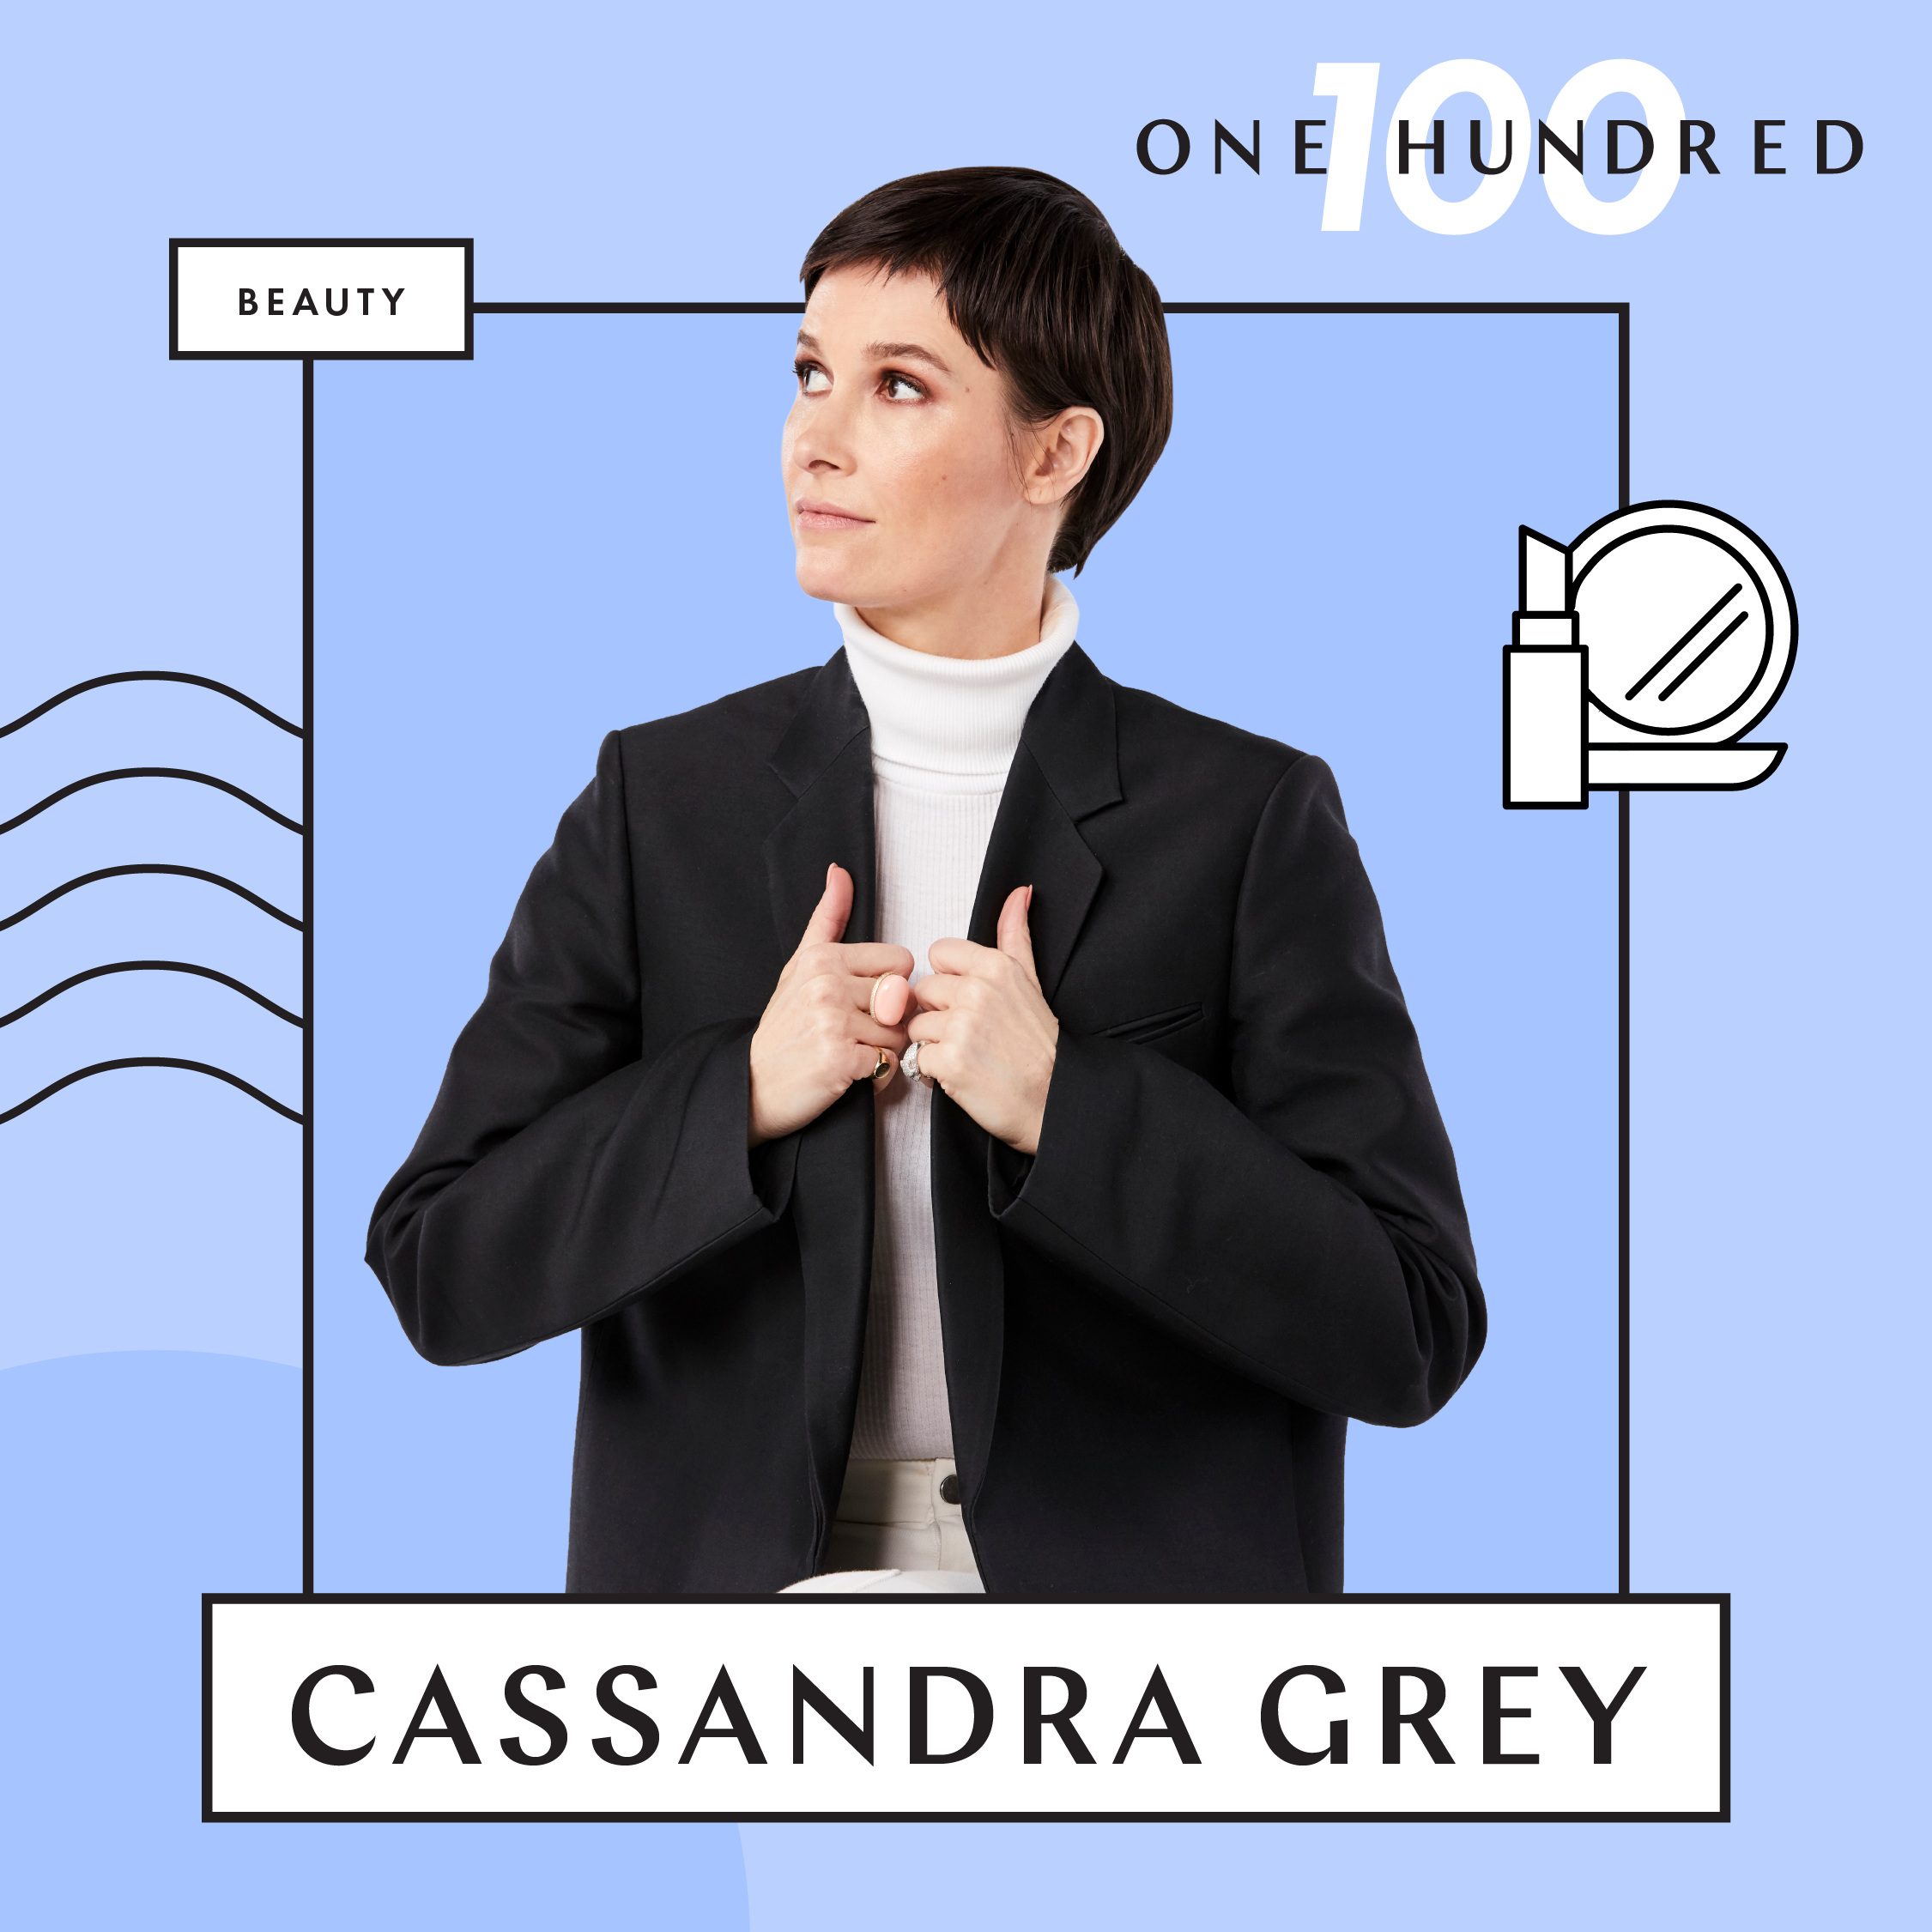 Cassandra-Grey-BLOG-ASSETS-CC100-02.png